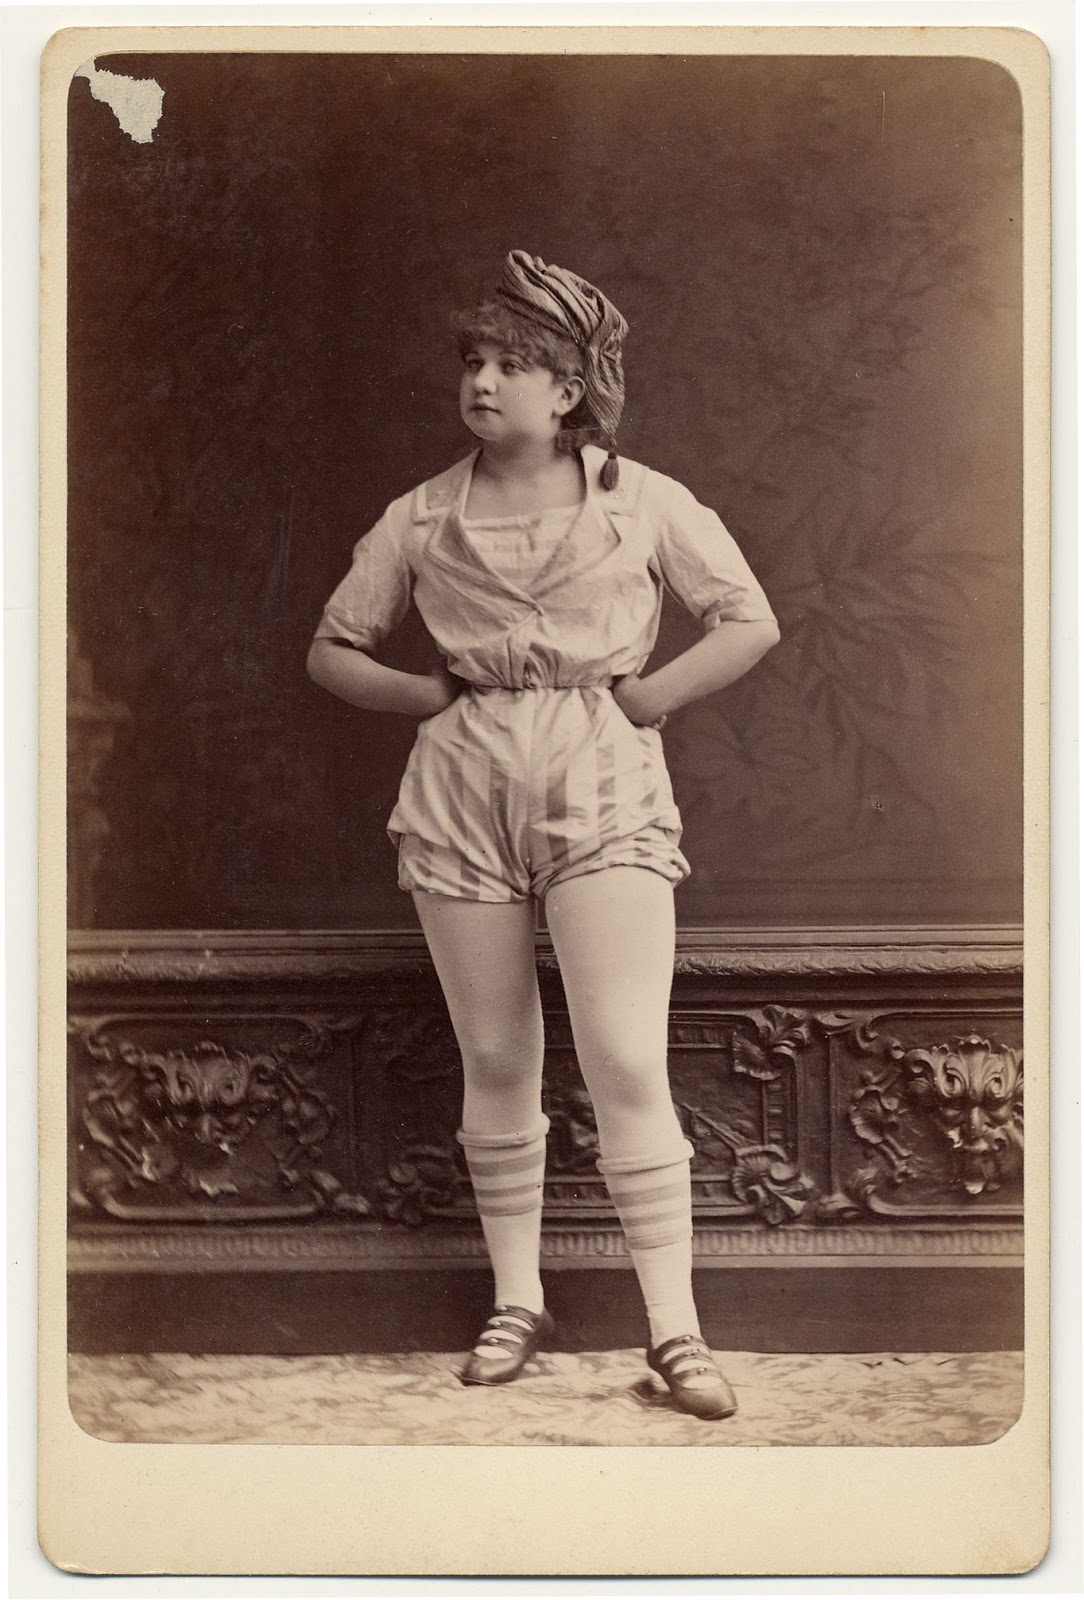 Модели 19 века. Танцовщица бурлеска 19 век. Викторианская эпоха танцовщицы. Танцовщица бурлеска 19 век Морено. Танцовщицы бурлеска викторианской эпохи.